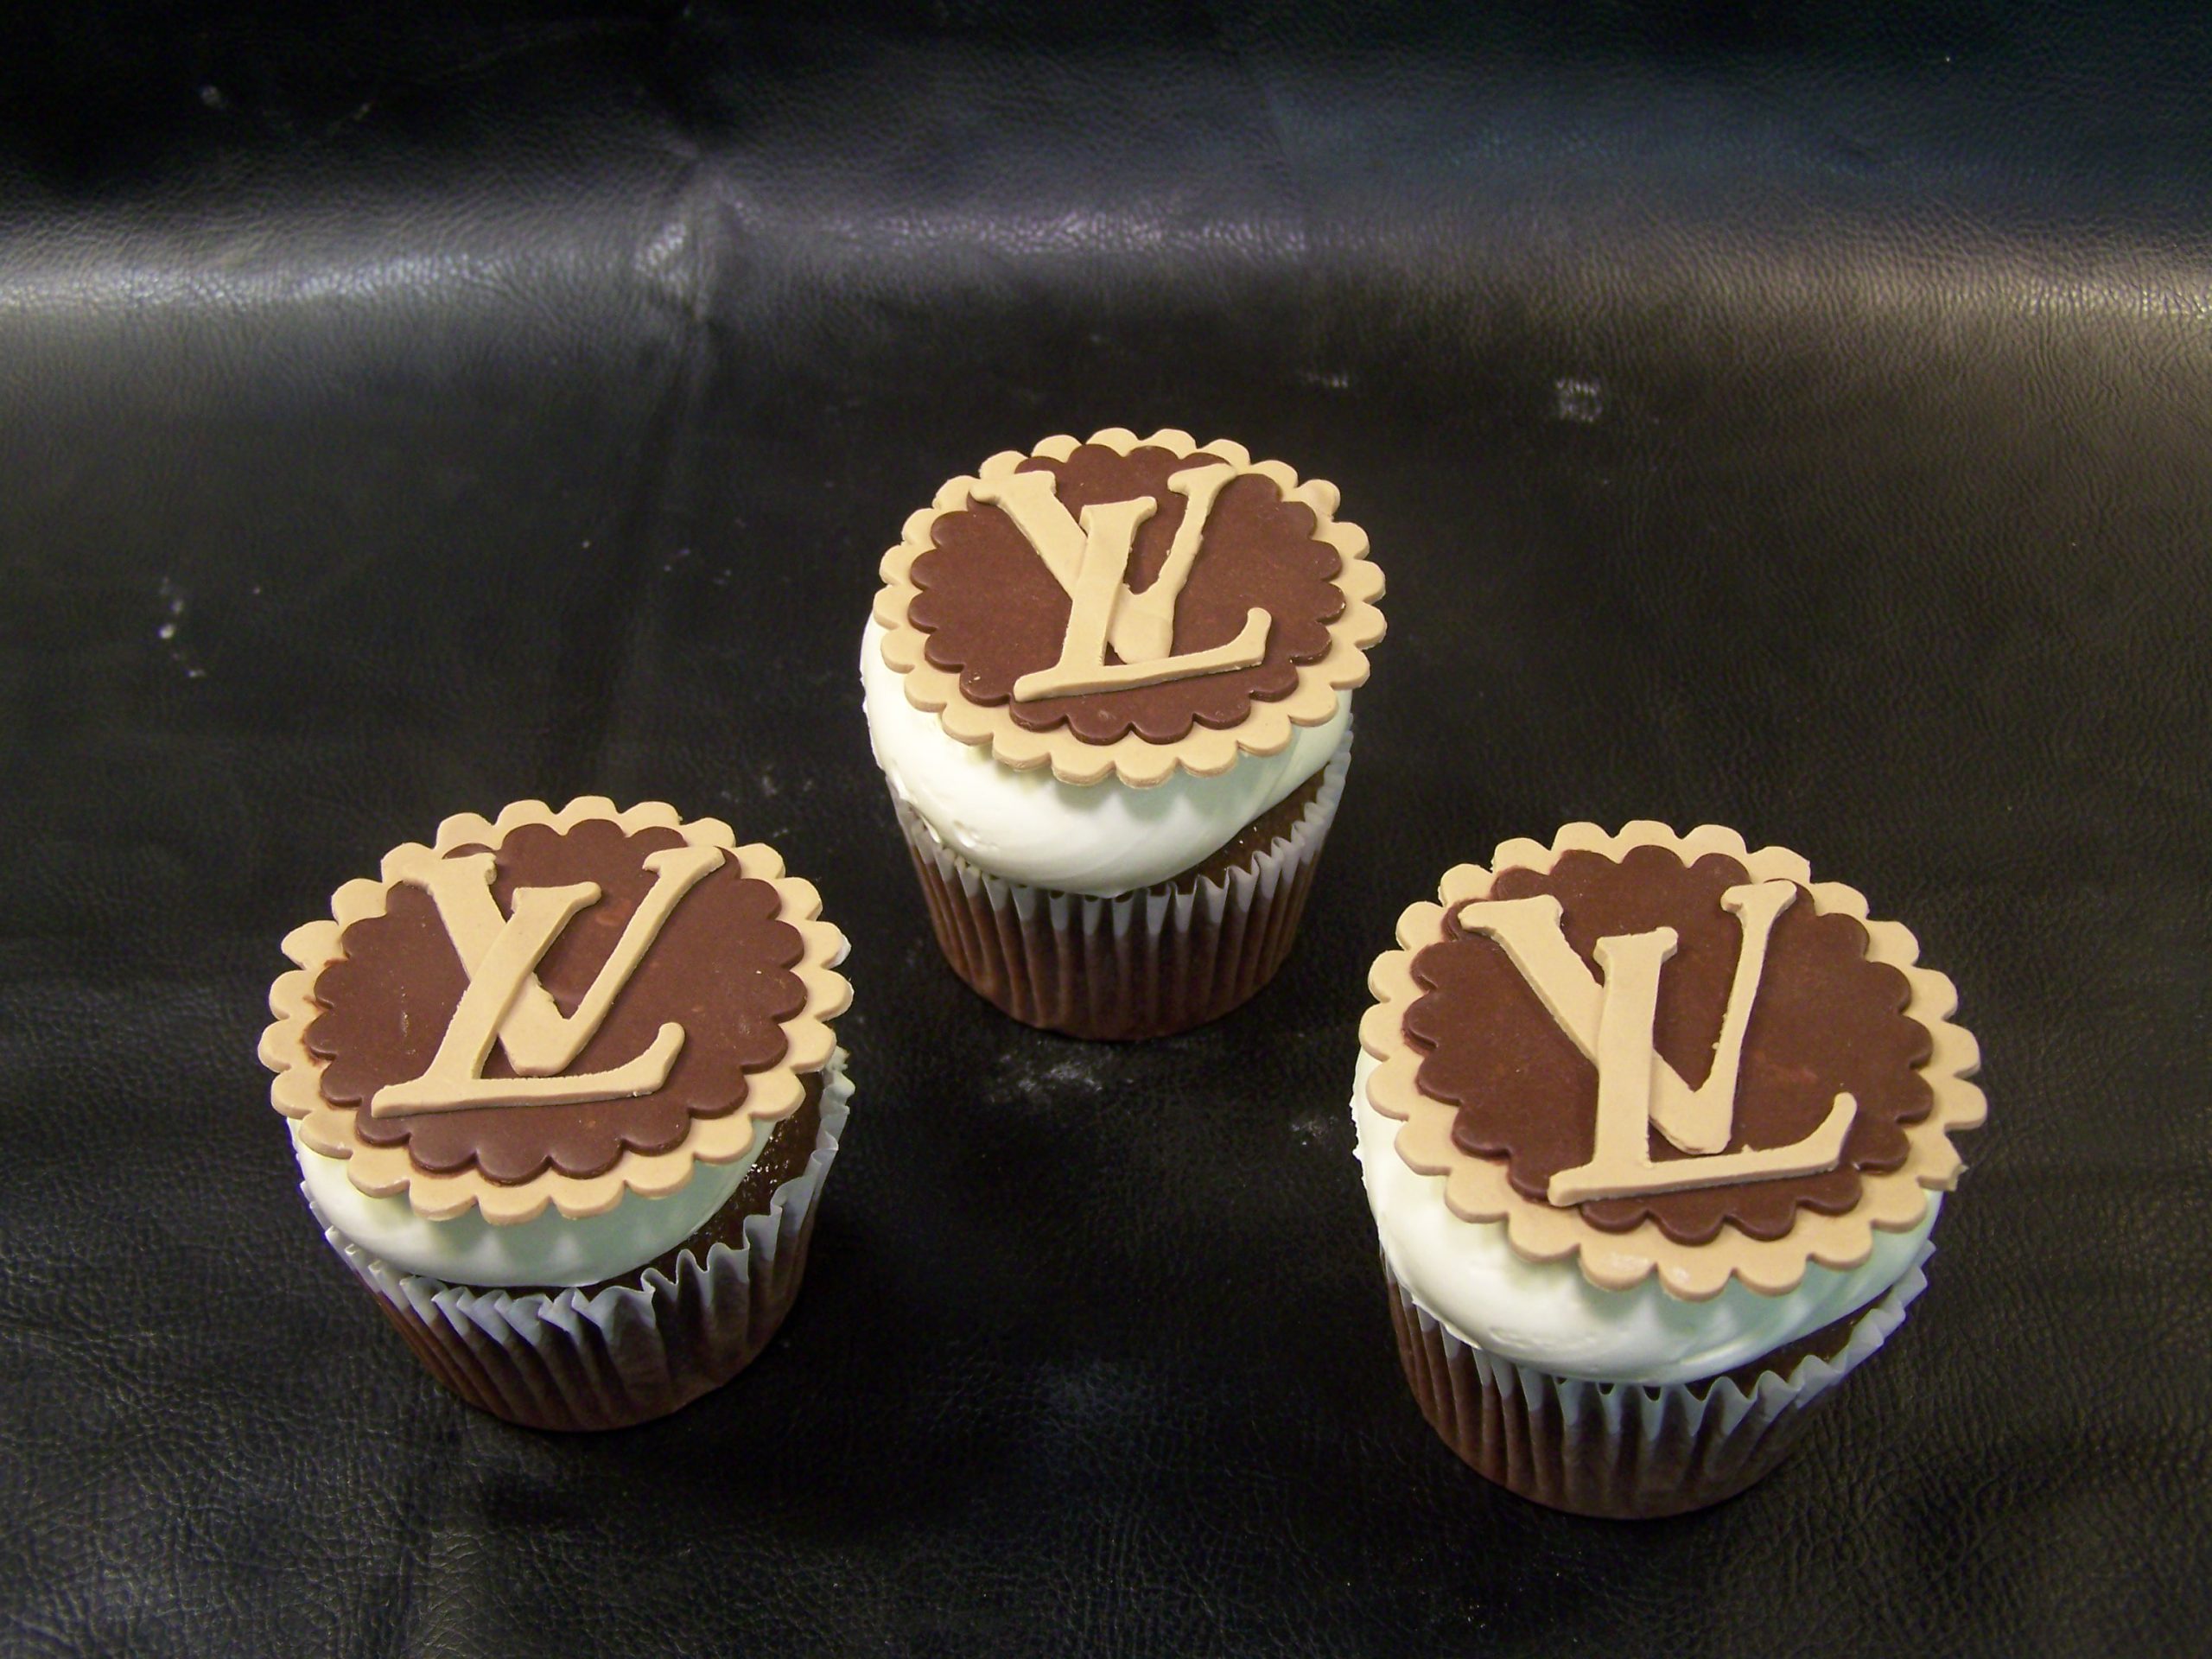 Louis Vuitton Cake and Cupcakes  Louis vuitton cake, Unique birthday cakes,  Cute birthday cakes